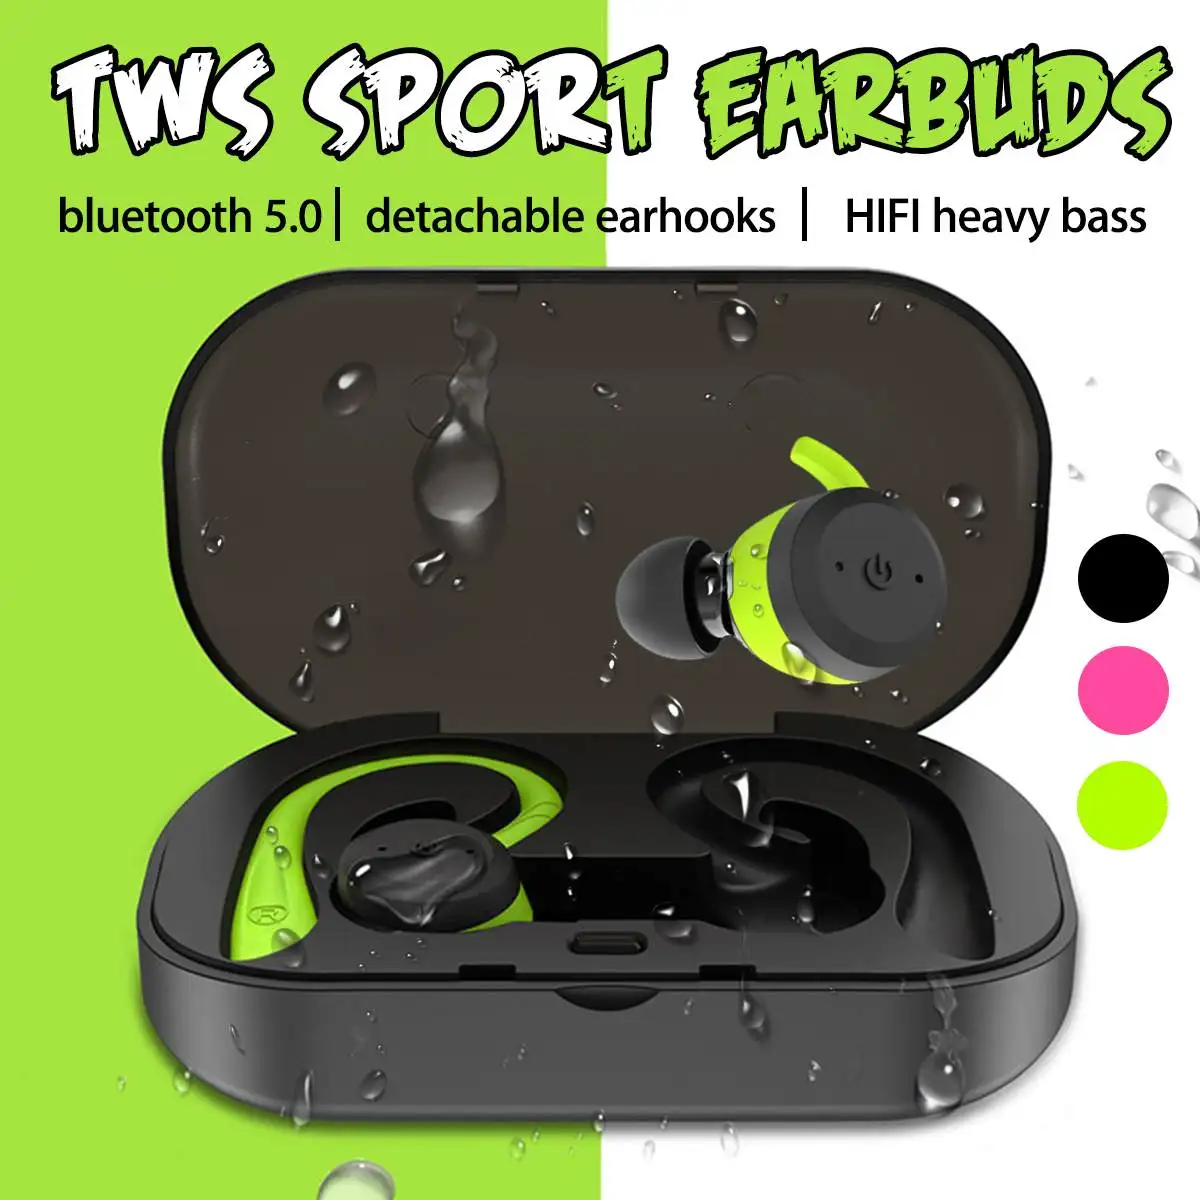 TWS bluetooth 5.0 Detachable Earhooks Earphones Headphone IPX7 Waterproof Sport 360 Degree HD Heavy Bass Earbud Headset with Mic |